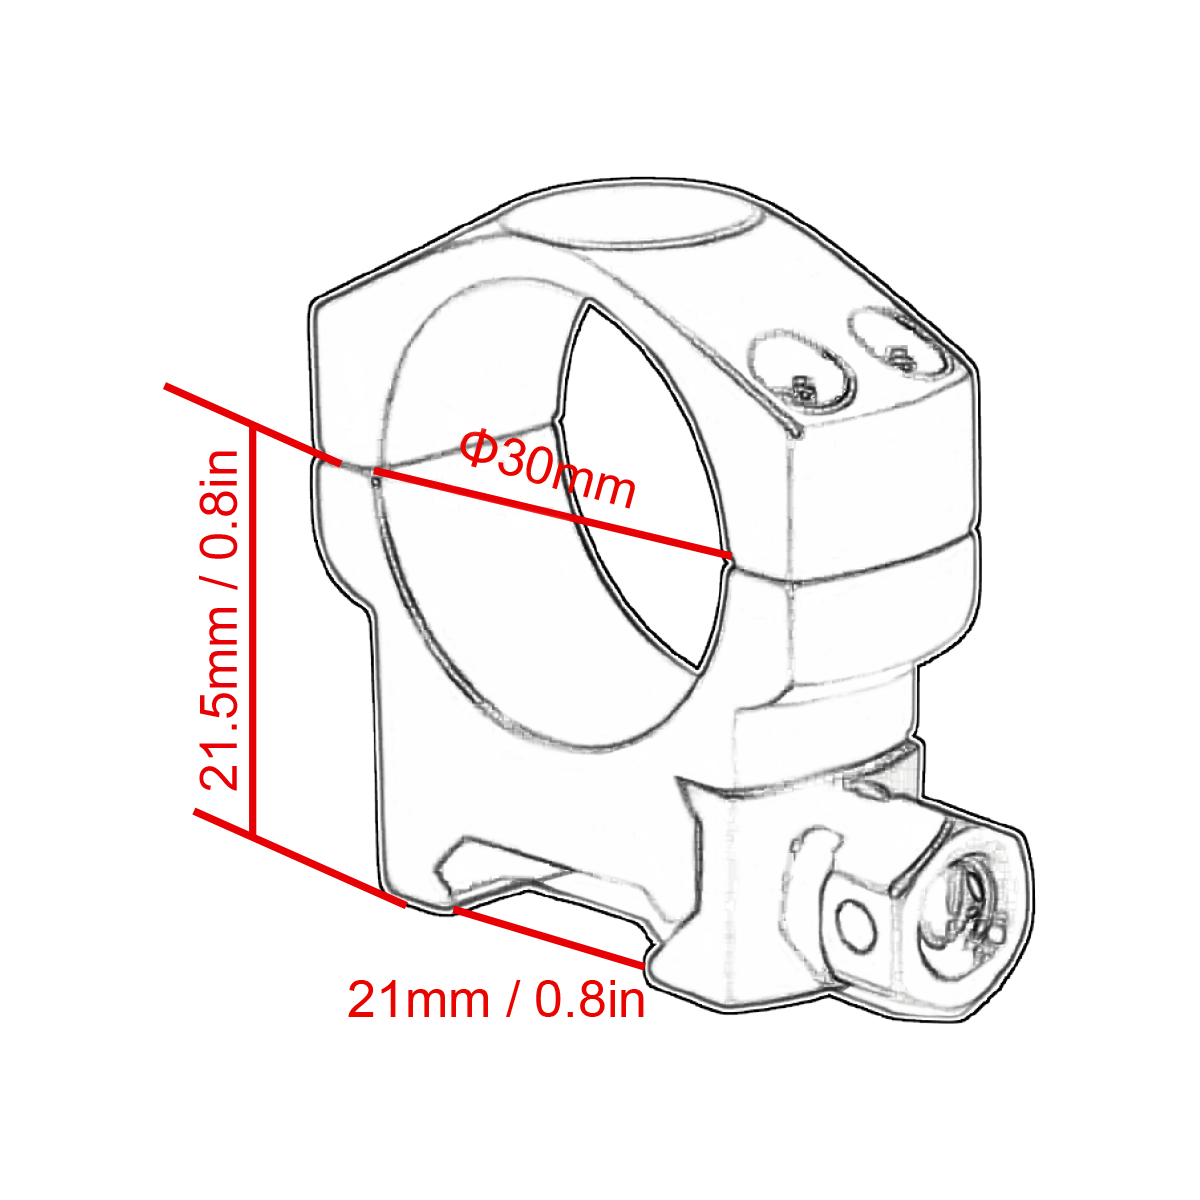 Diagrama de anillos de tejedor de perfil bajo SCTM-27 de 30 mm